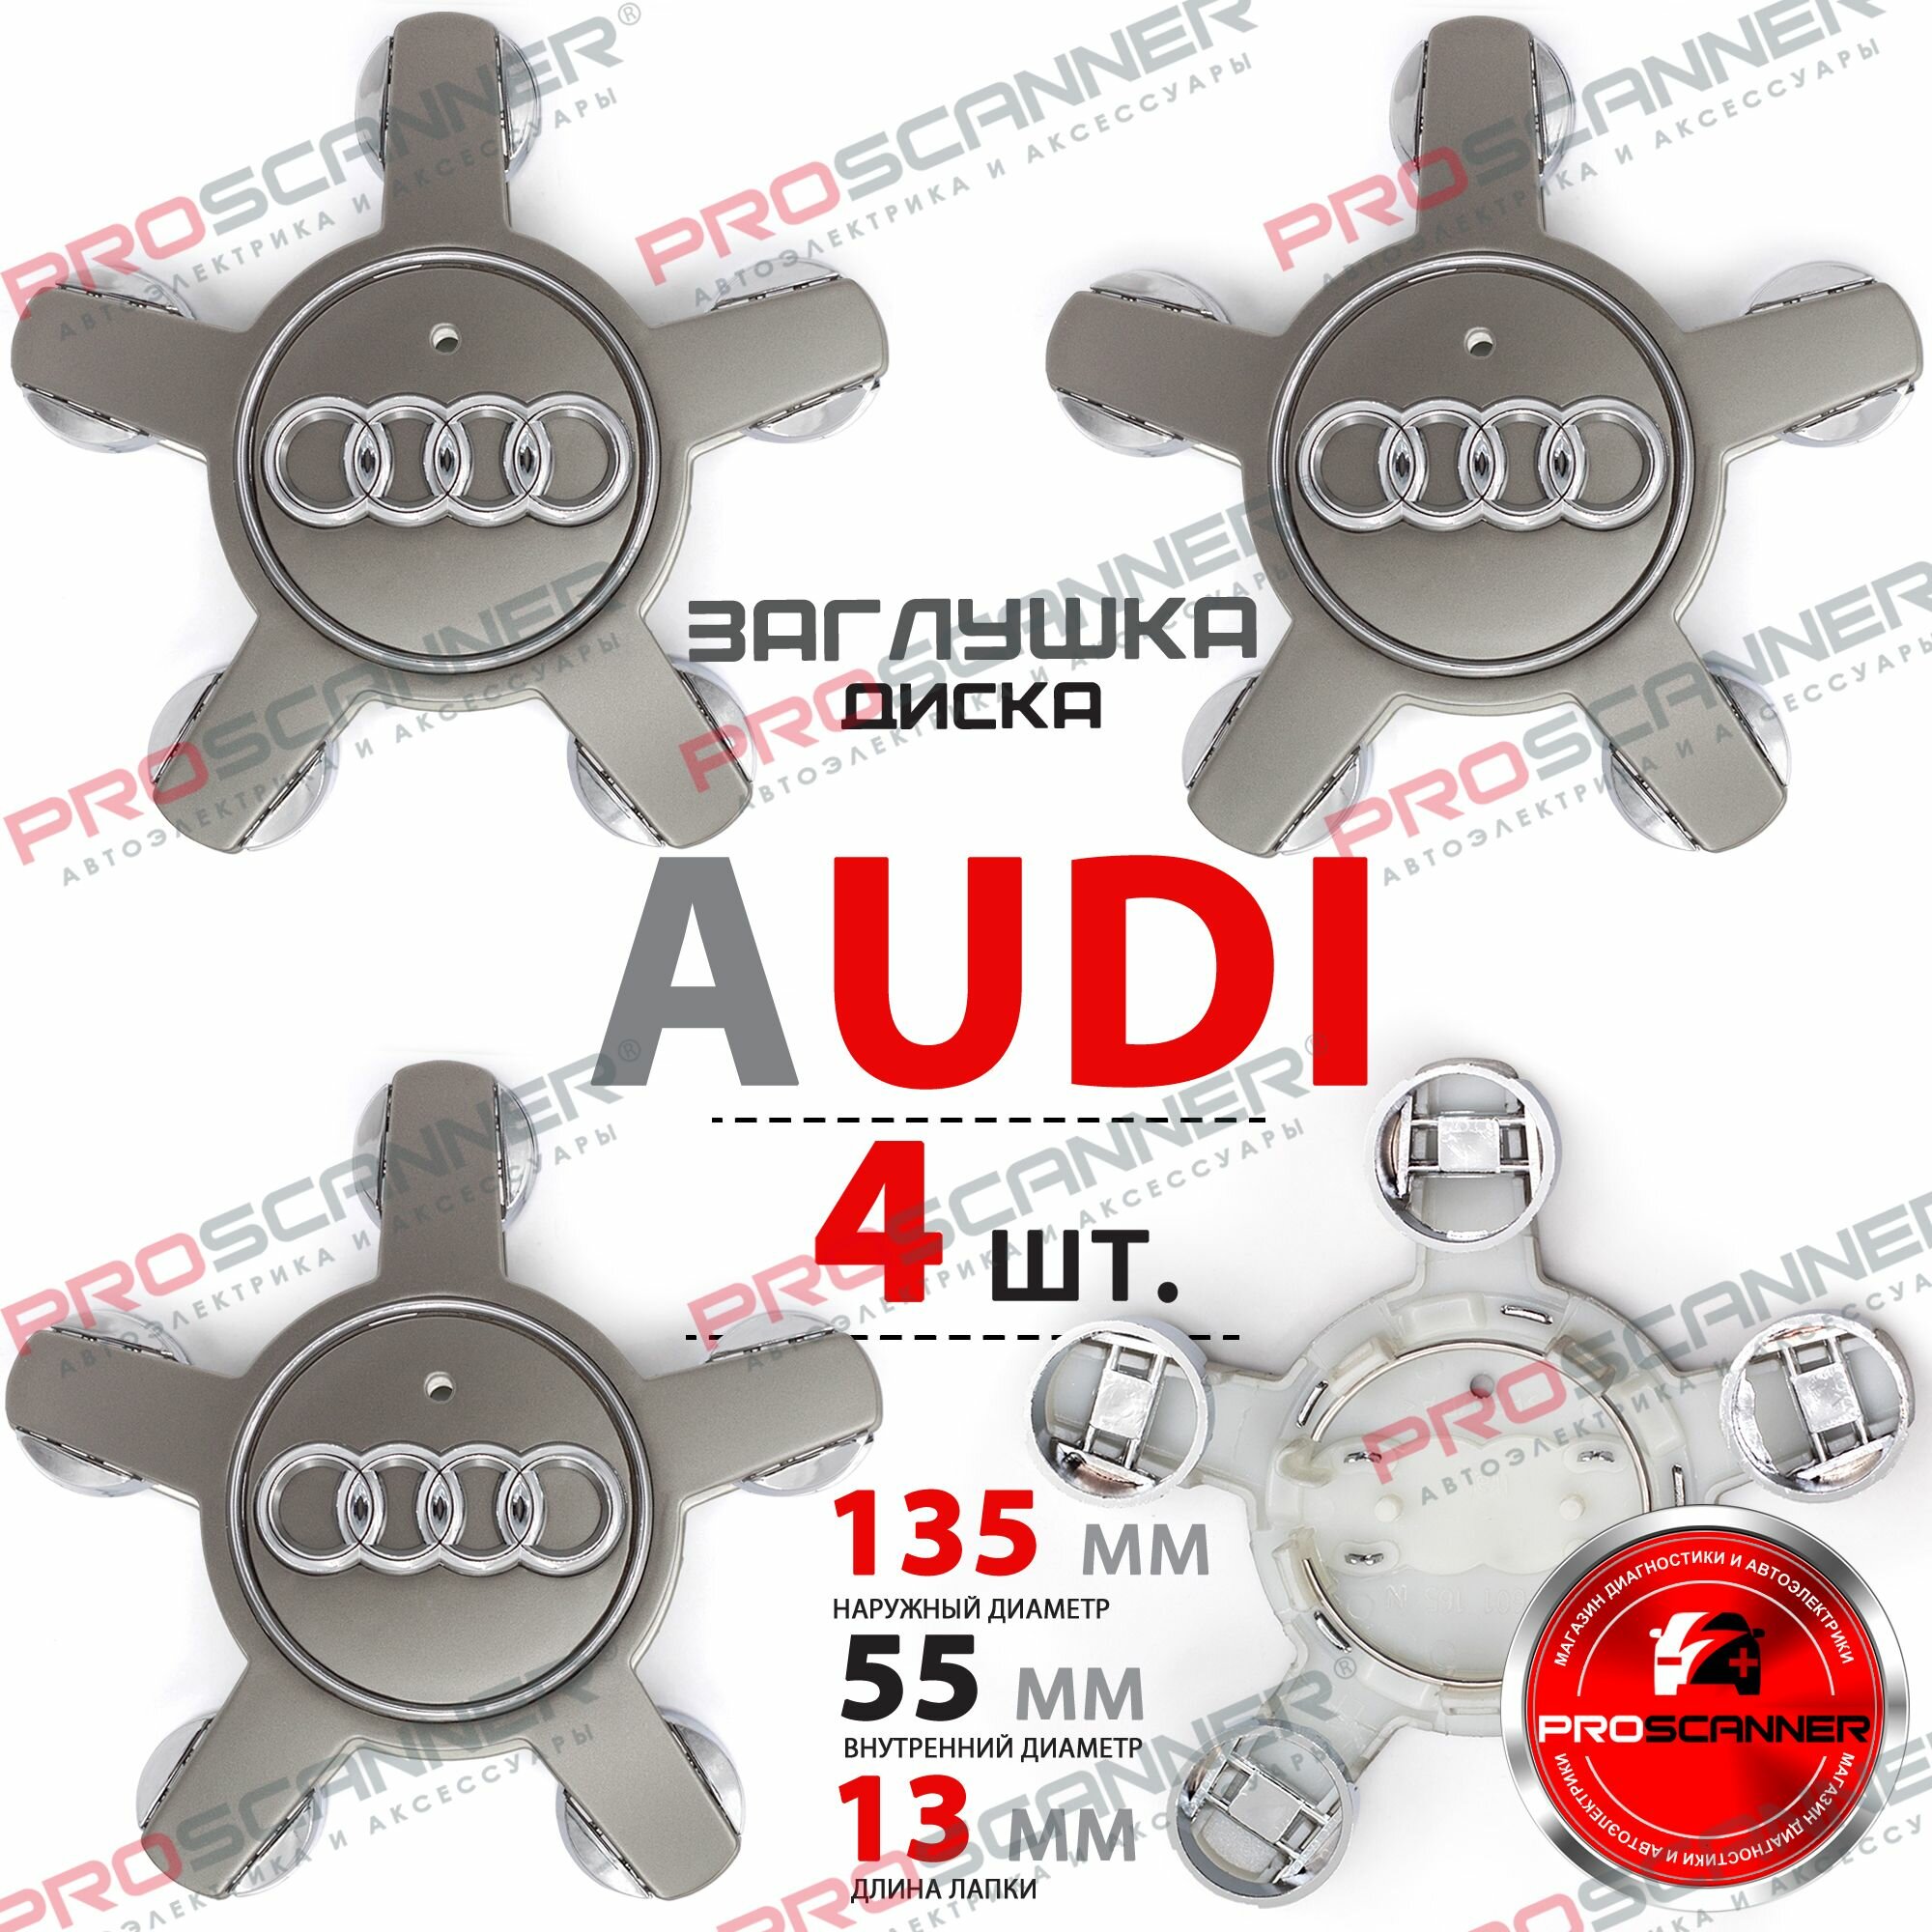 Колпачки заглушки на литые диски колеса для Audi Звезда 5х112 R16, R17, R18 4F0601165N - 4 штуки, серебро